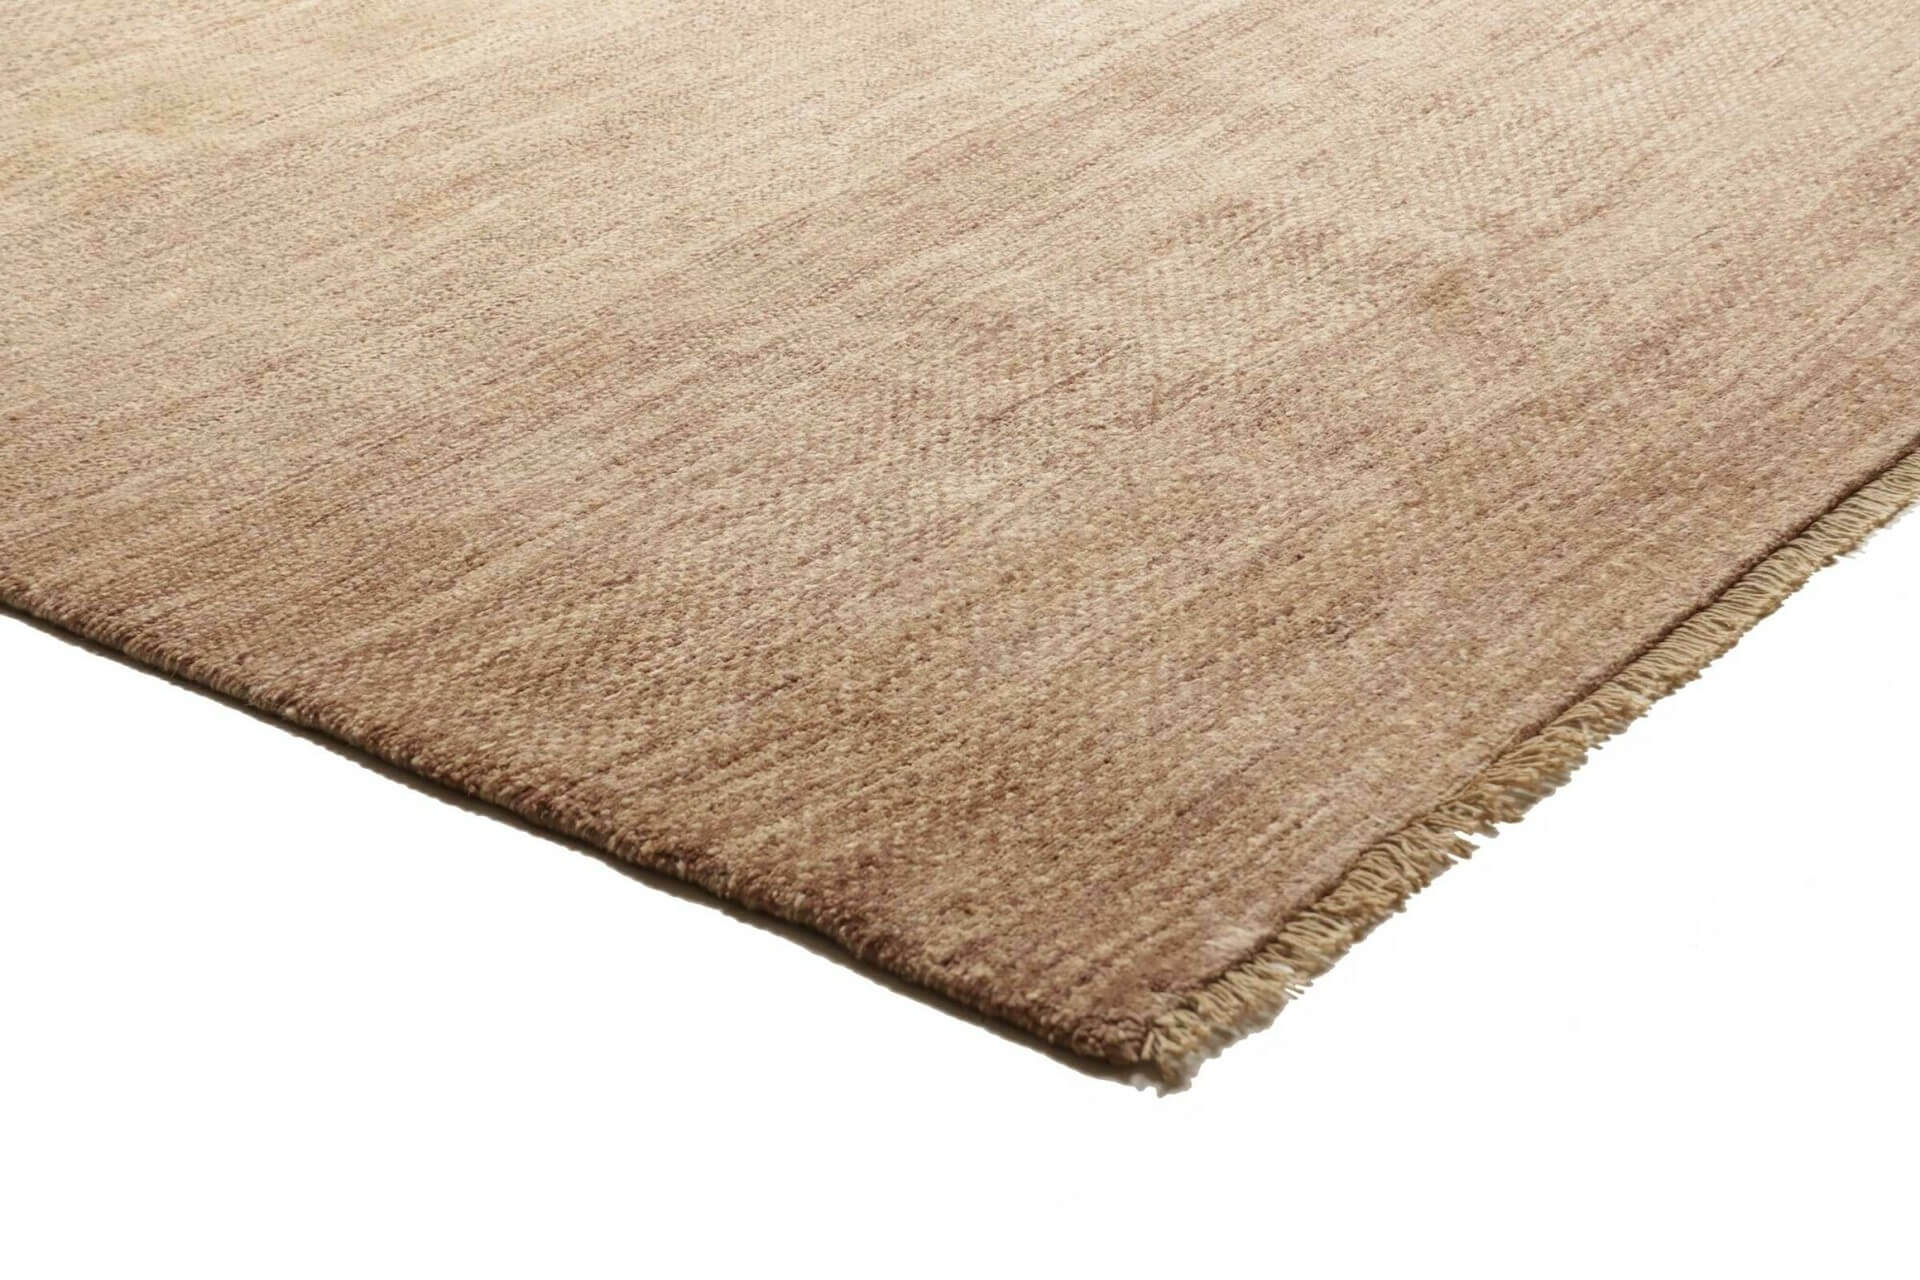 Afghanteppich Shayan, handgeknüpft aus Schurwolle, beige/braun, 197 x 296 cm, Detailansicht